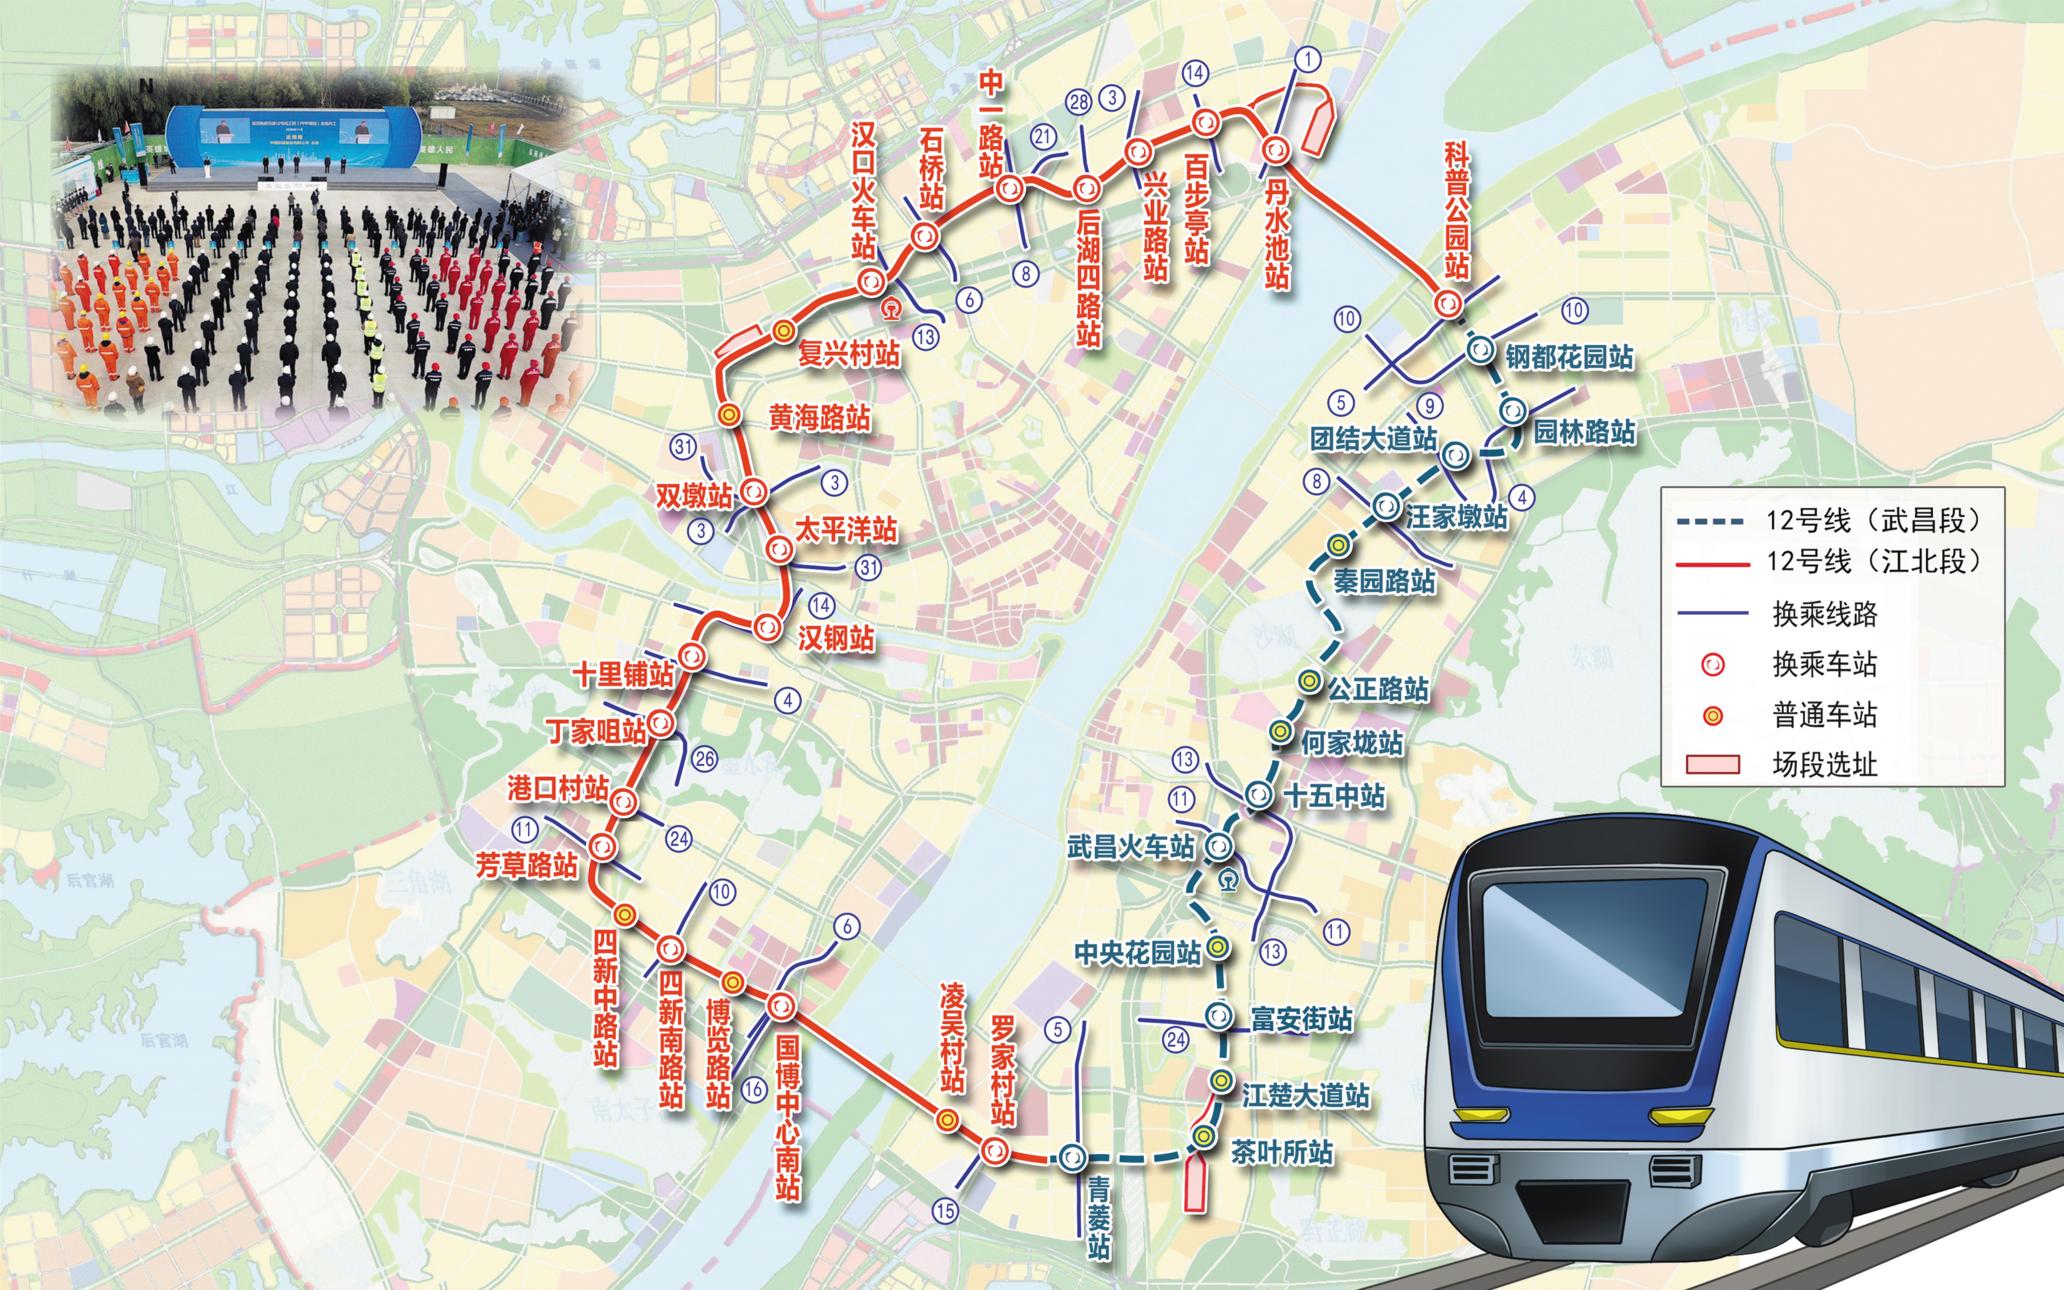 最强环线来了 预计2025年底全线开通 为世界第2长城市地铁环线 设站37座 可换乘18条地铁线 制图：刘阳